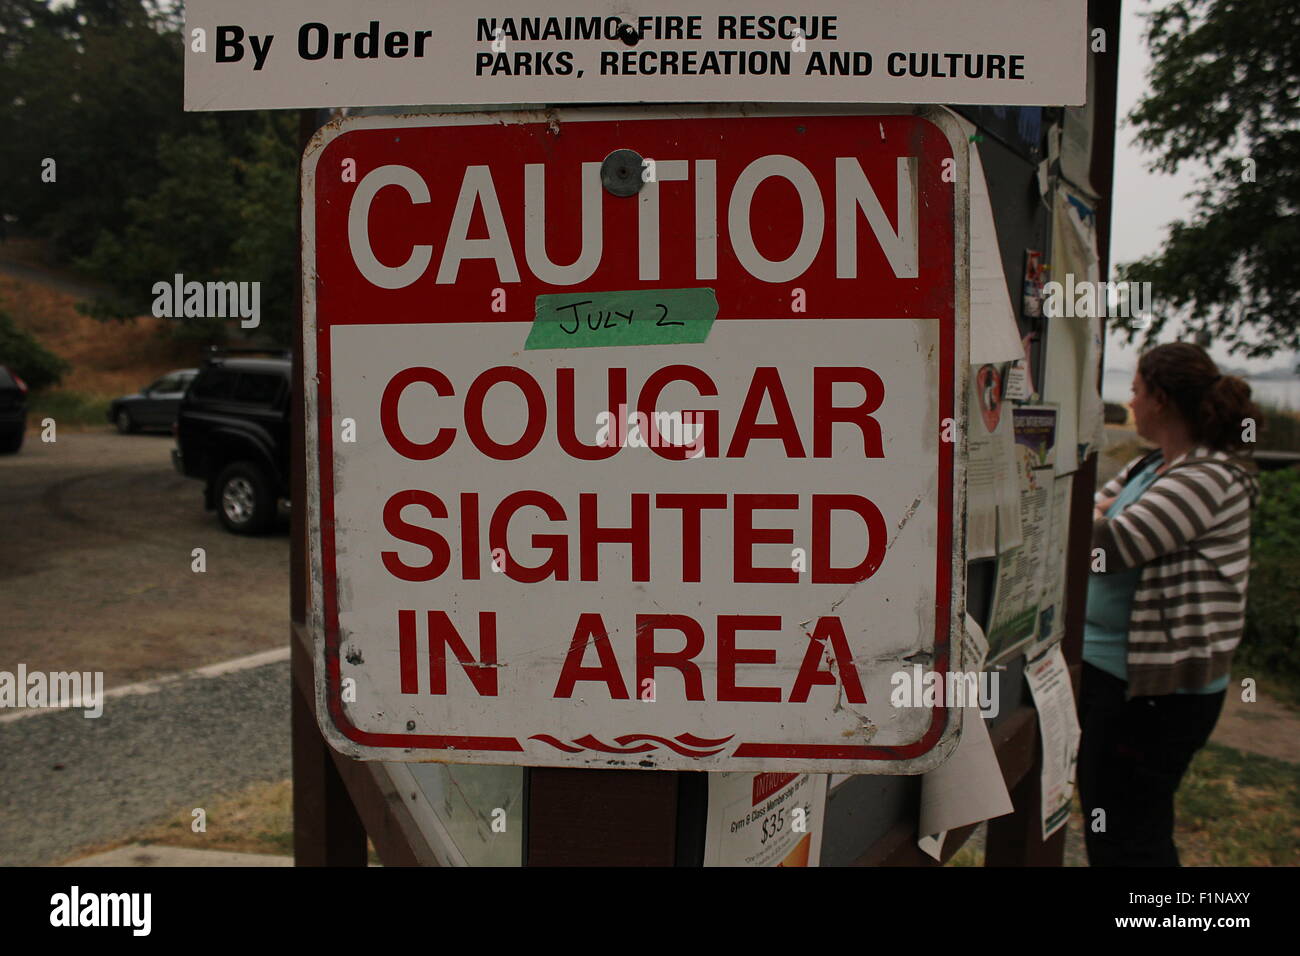 Cougar sighting warning sign at a park in Nanaimo, British Columbia Stock Photo